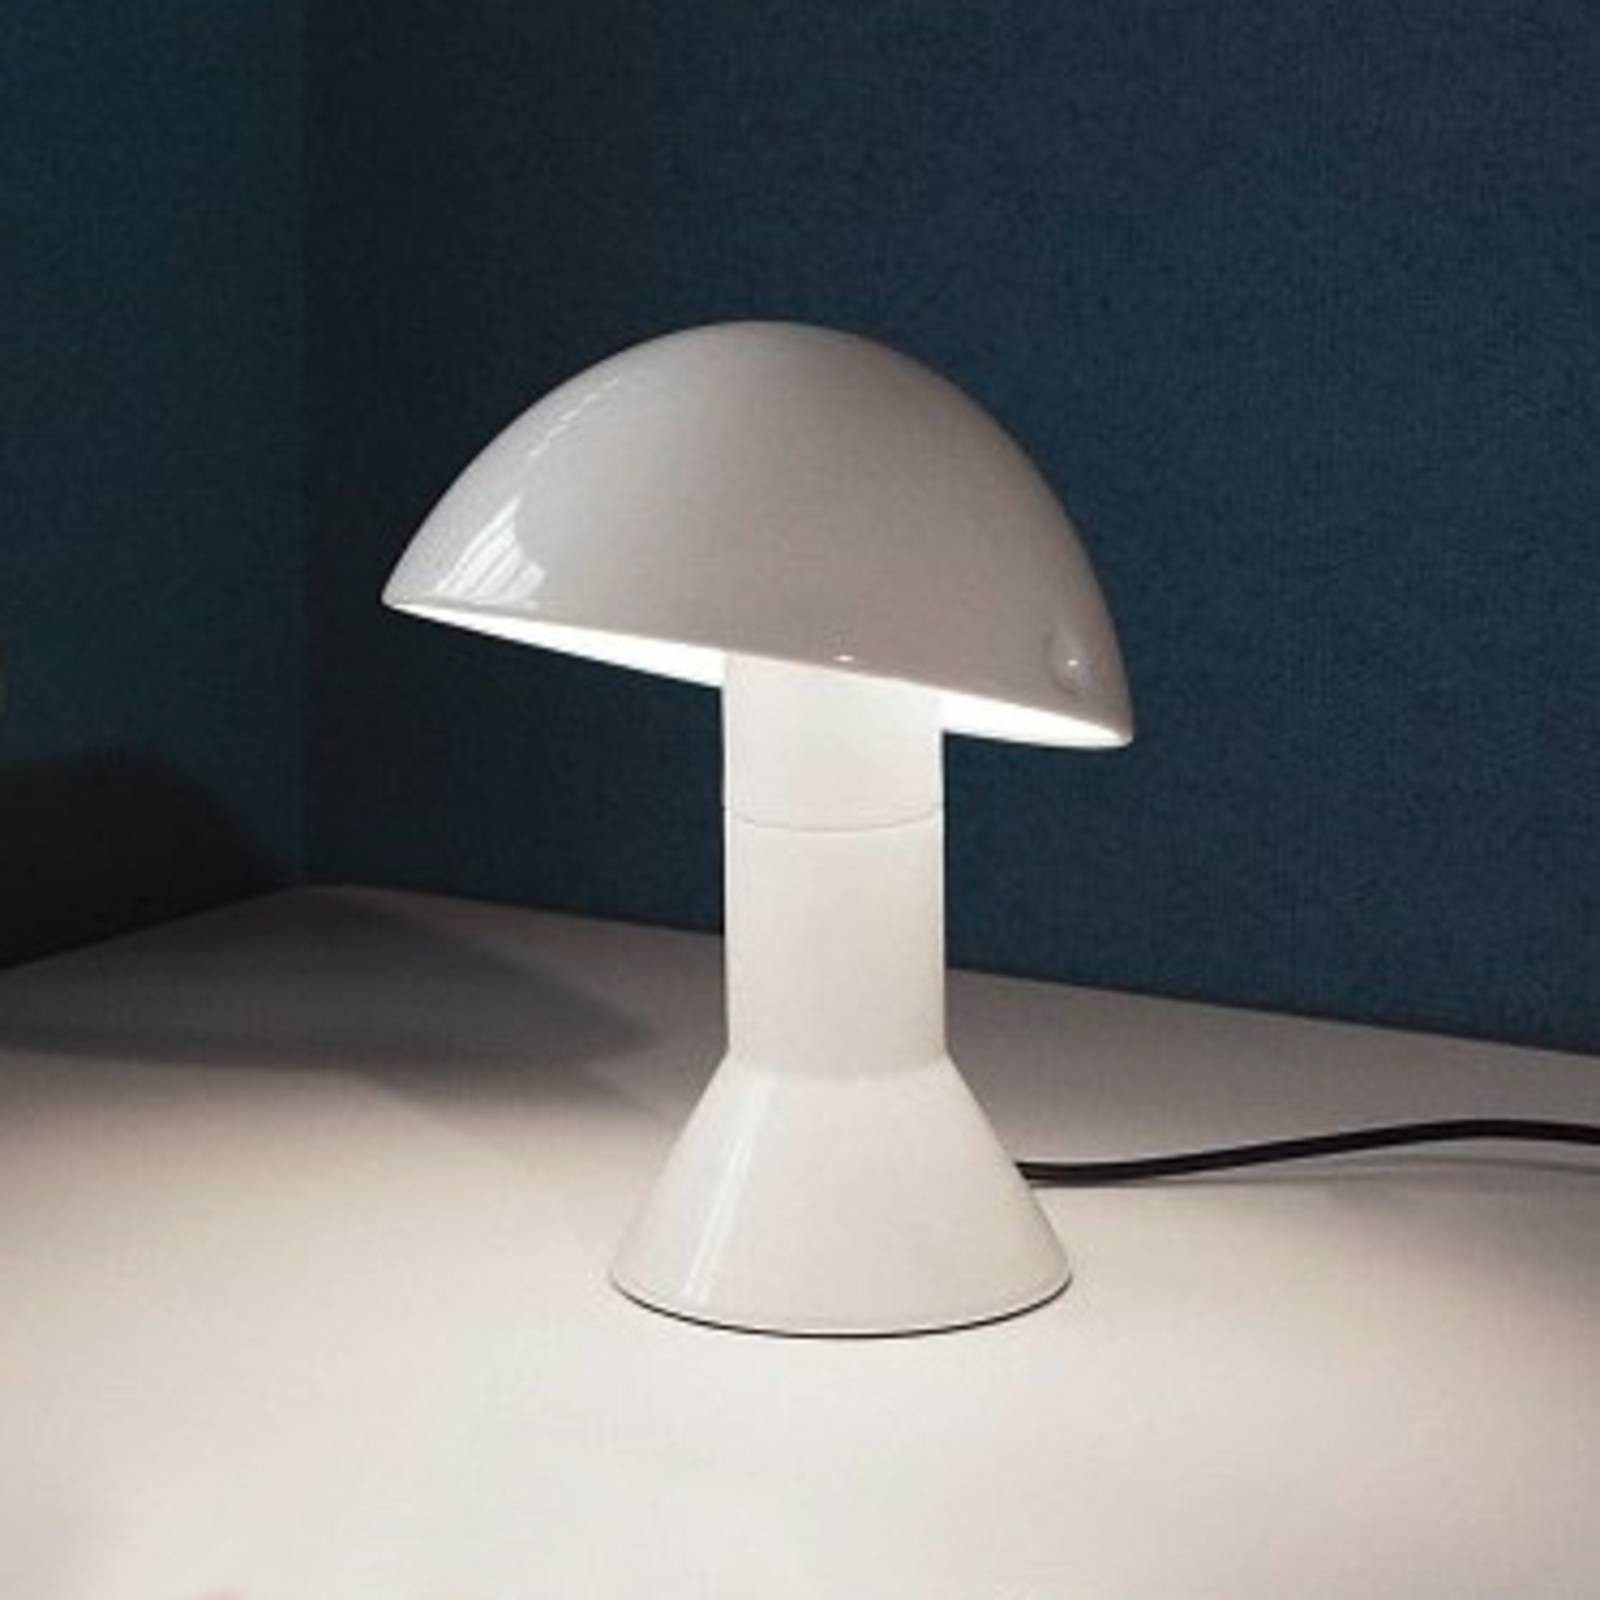 Image of Lampe à poser design ELMETTO blanche 8033383550956